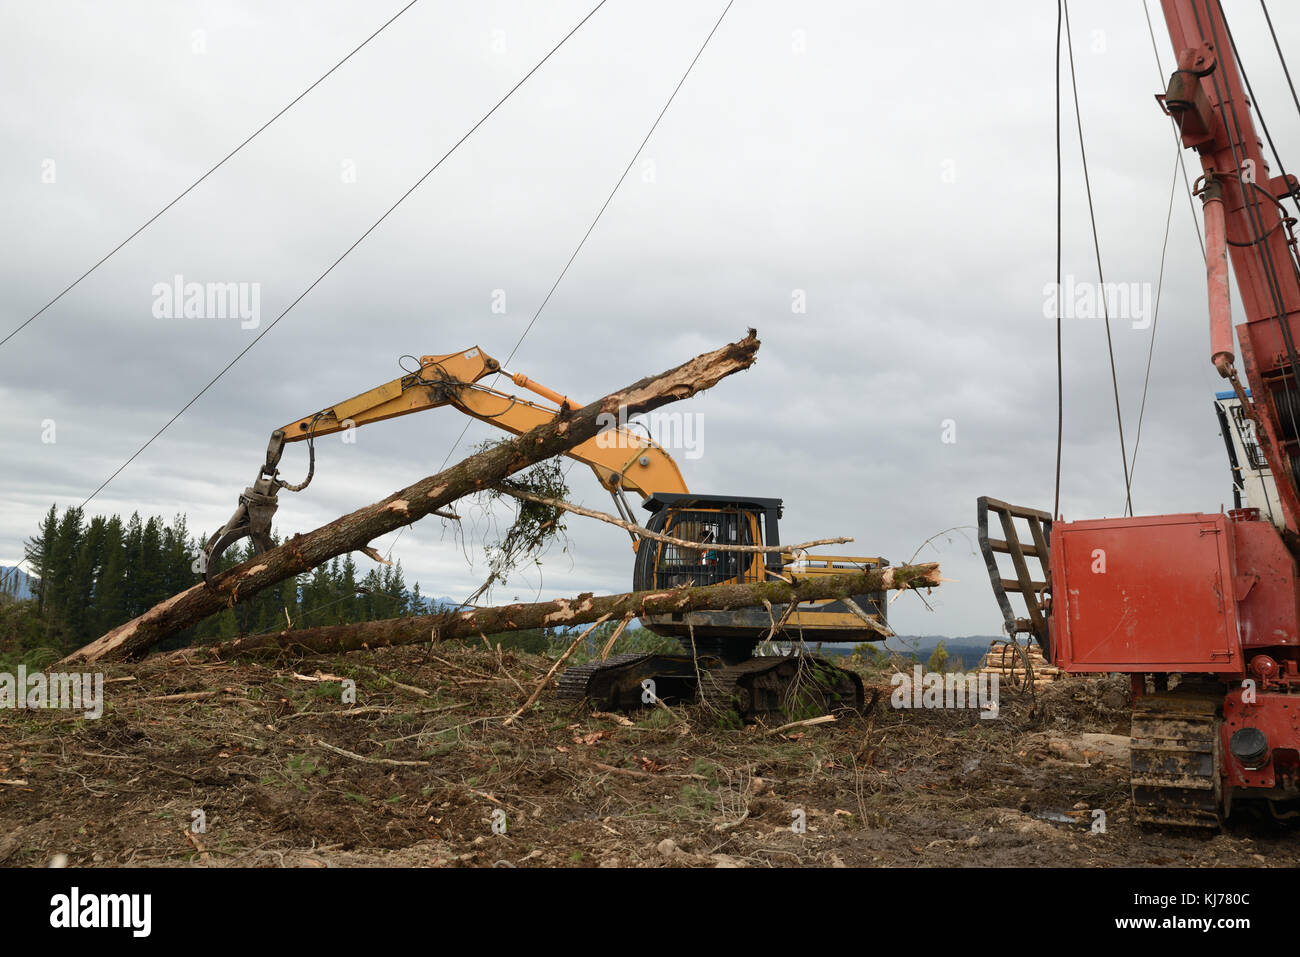 Pilote un creuseur capture un log en haut de la zone à un transporteur site d'exploitation forestière Banque D'Images